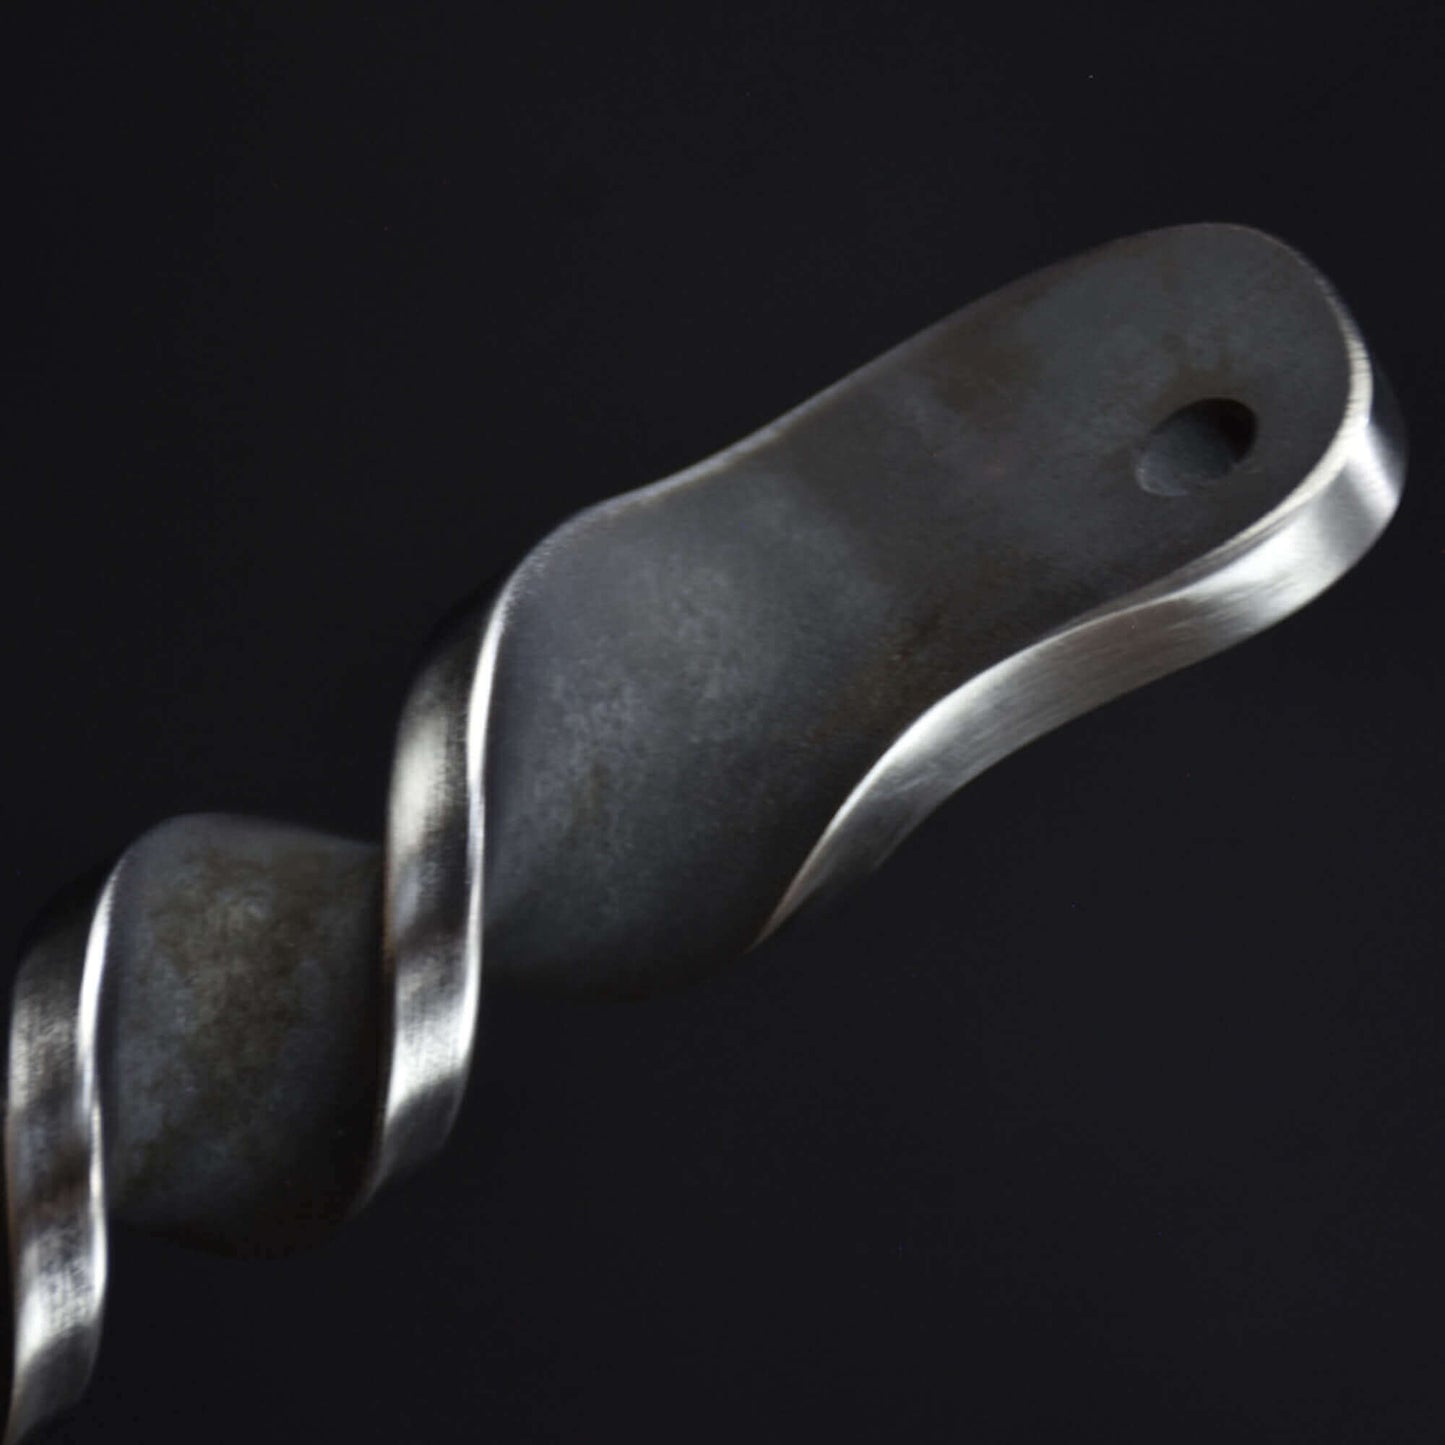 Handmade Full Carbon Steel Viking Knife